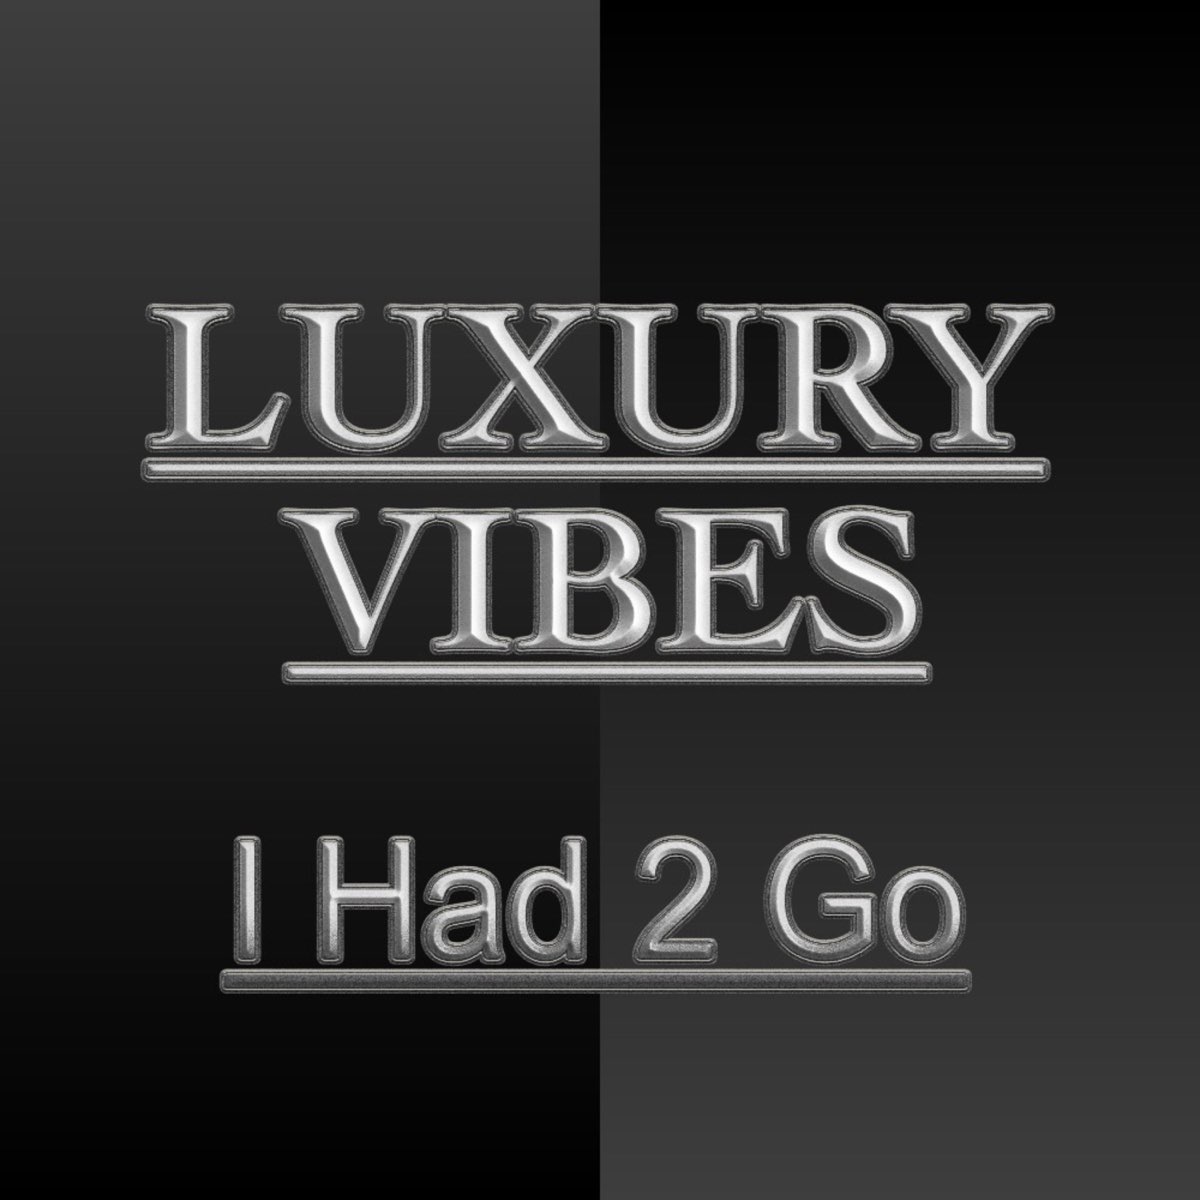 Give vibes. Luxury Vibe. Luxury Vibes перевод.